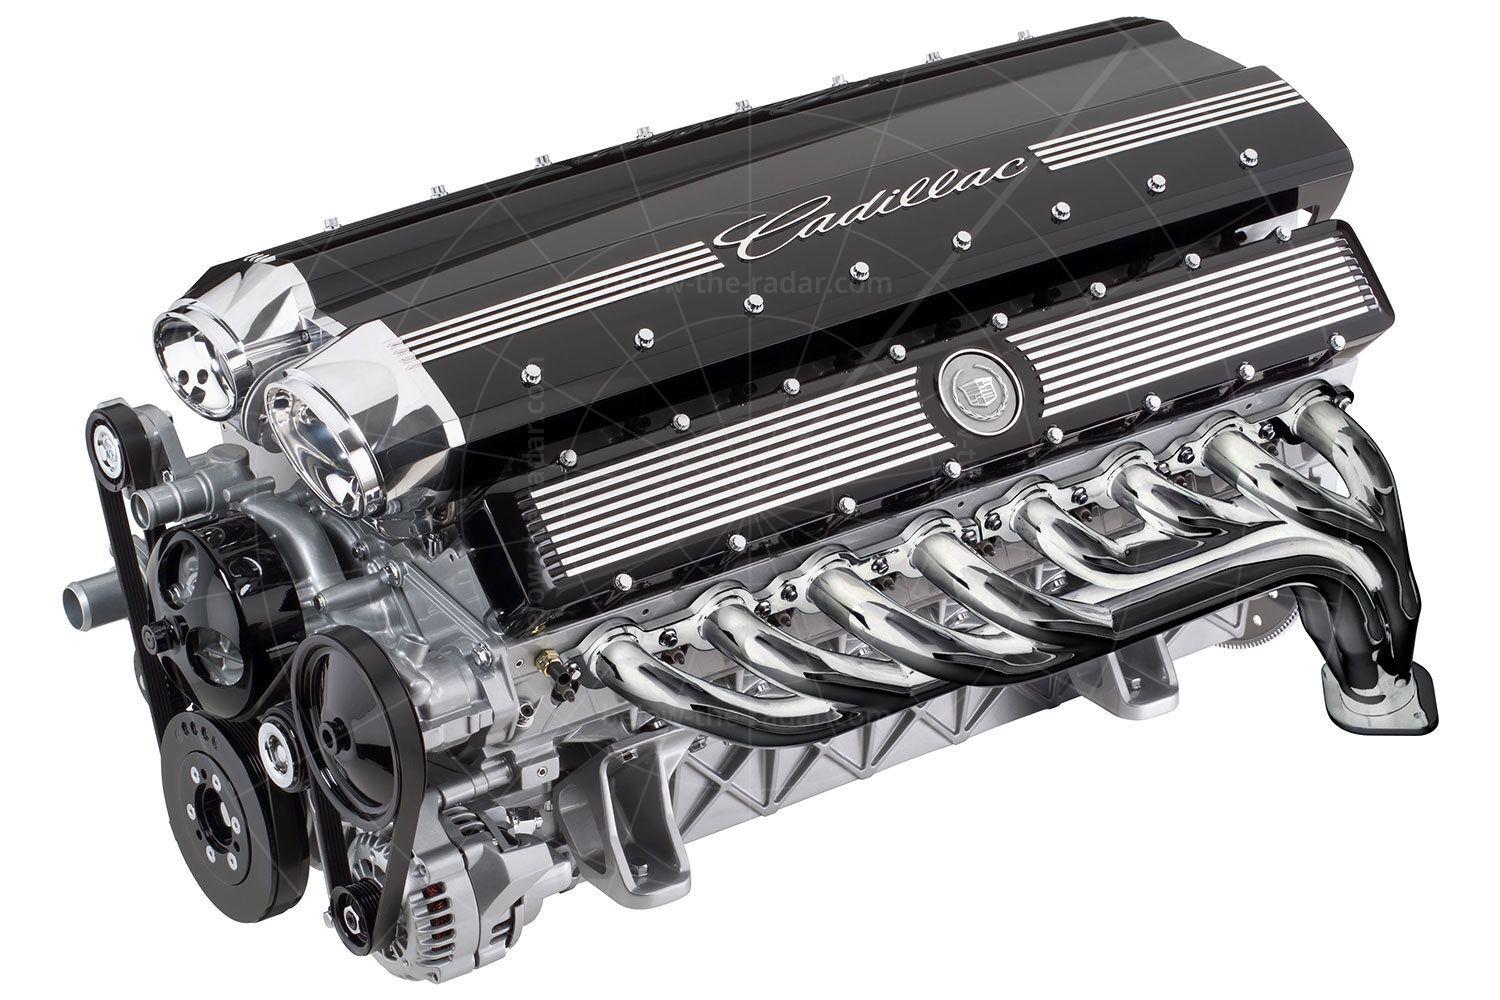 Cadillac Sixteen engine Pic: Cadillac | Cadillac Sixteen engine